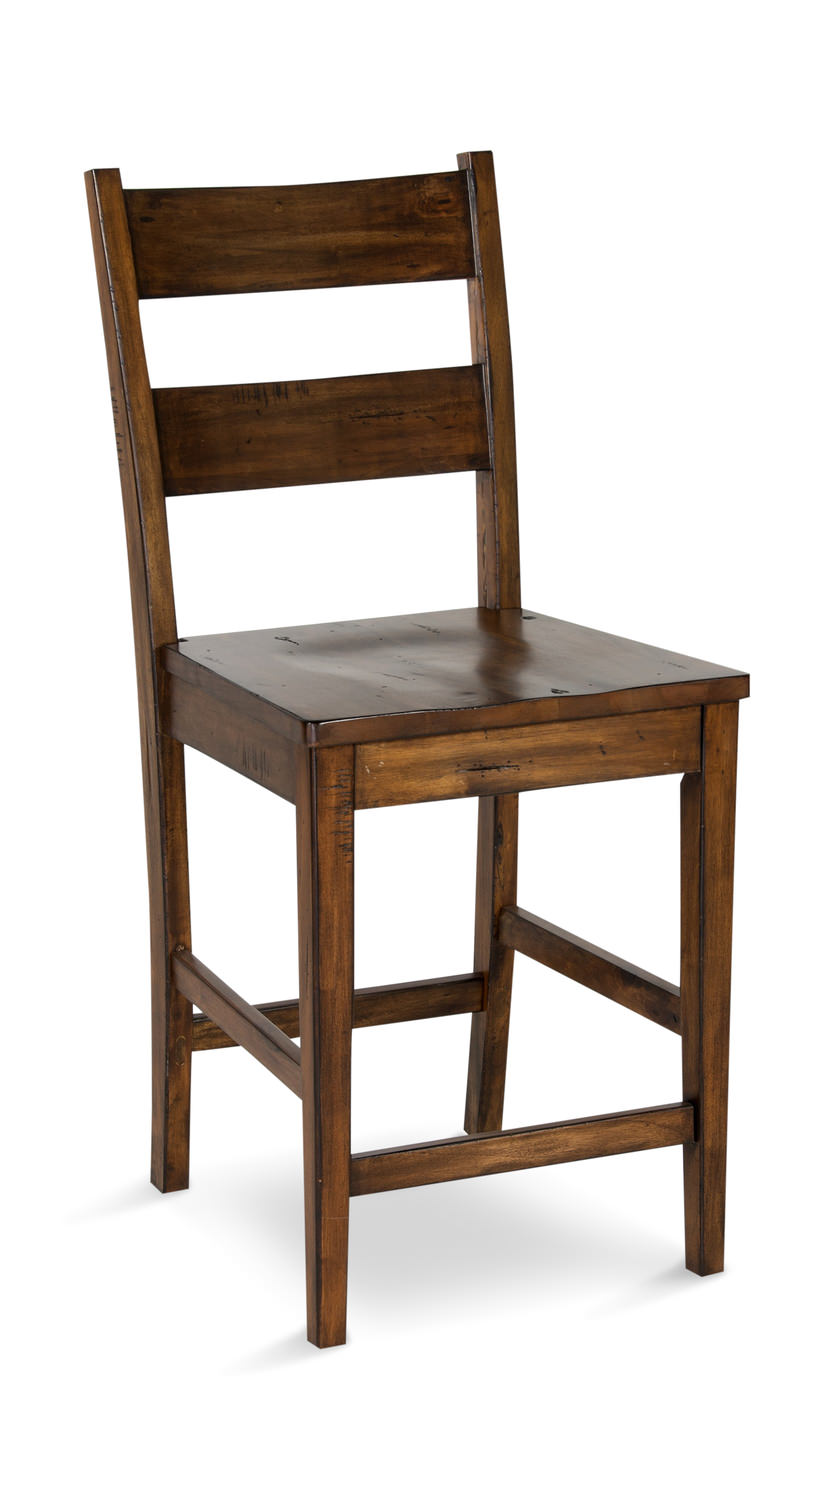 mahogany stool